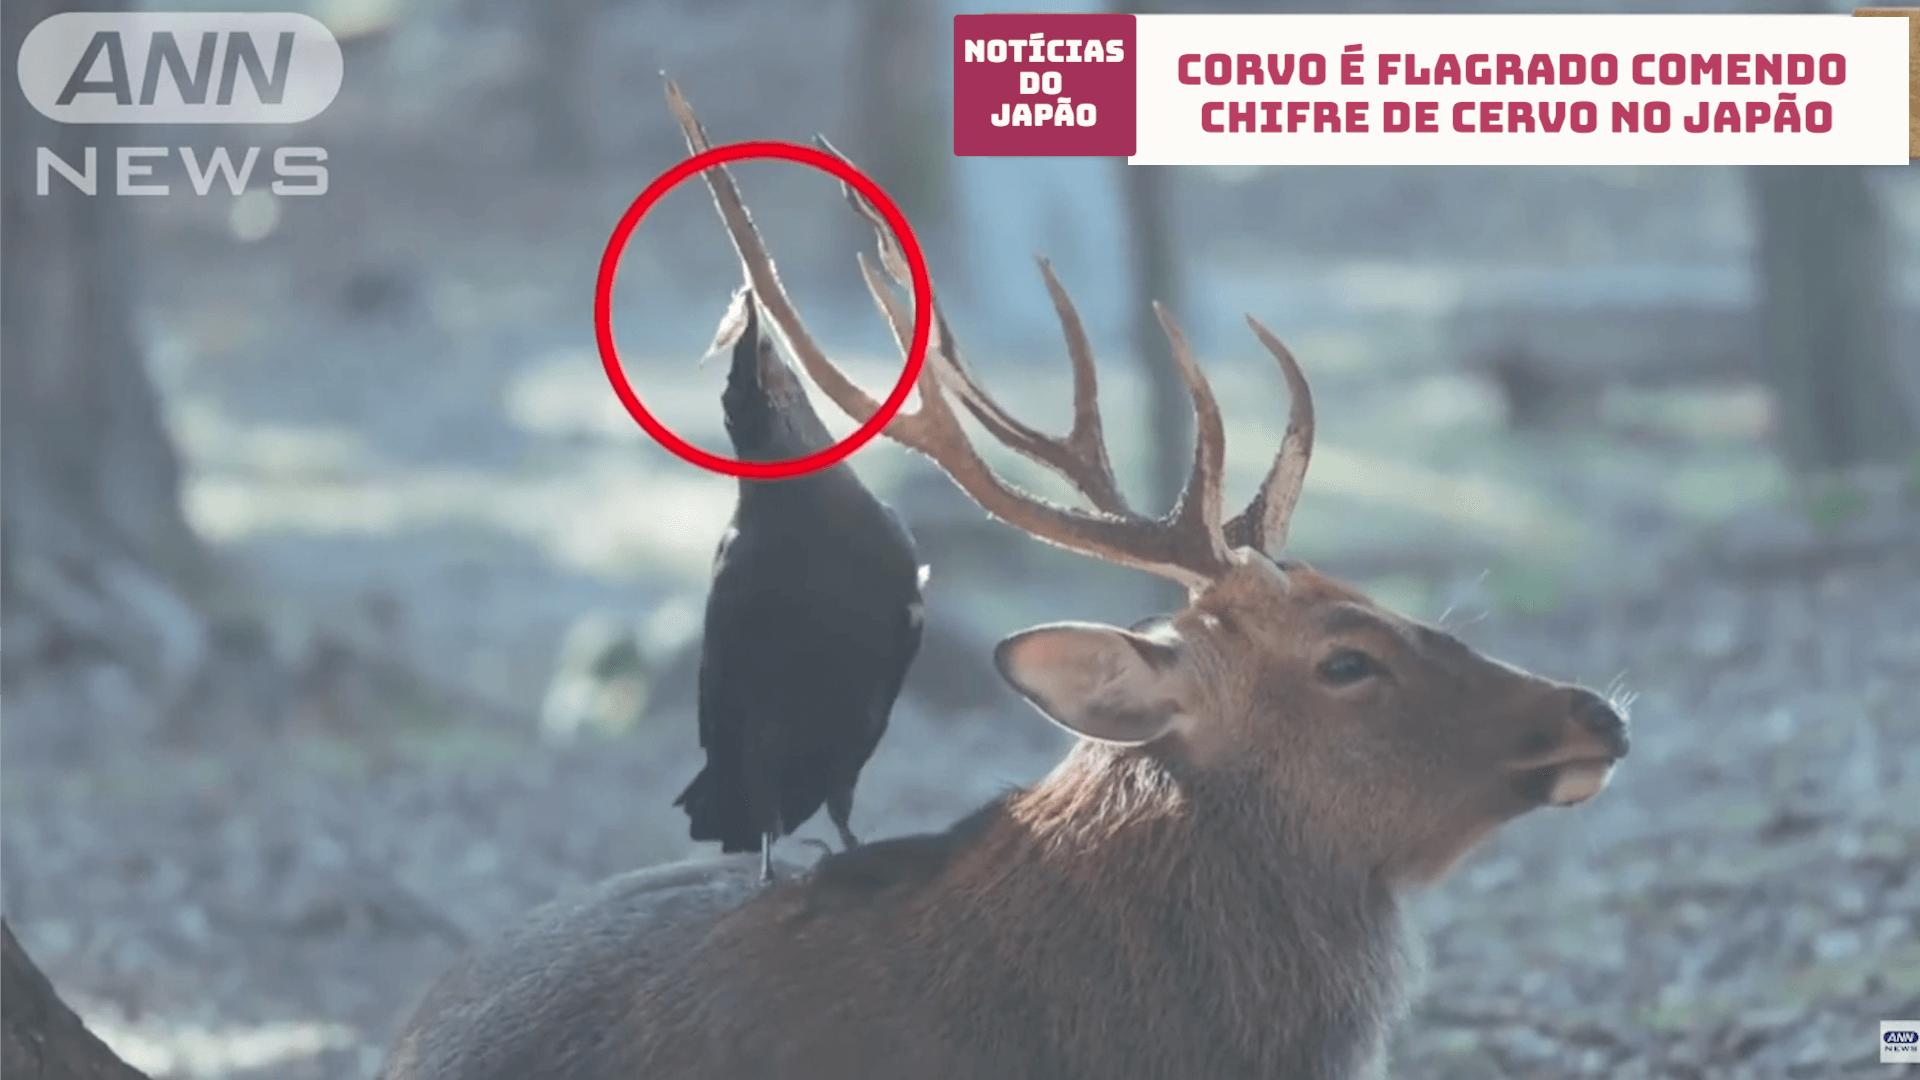 Corvo é flagrado comendo chifre de cervo no Japão